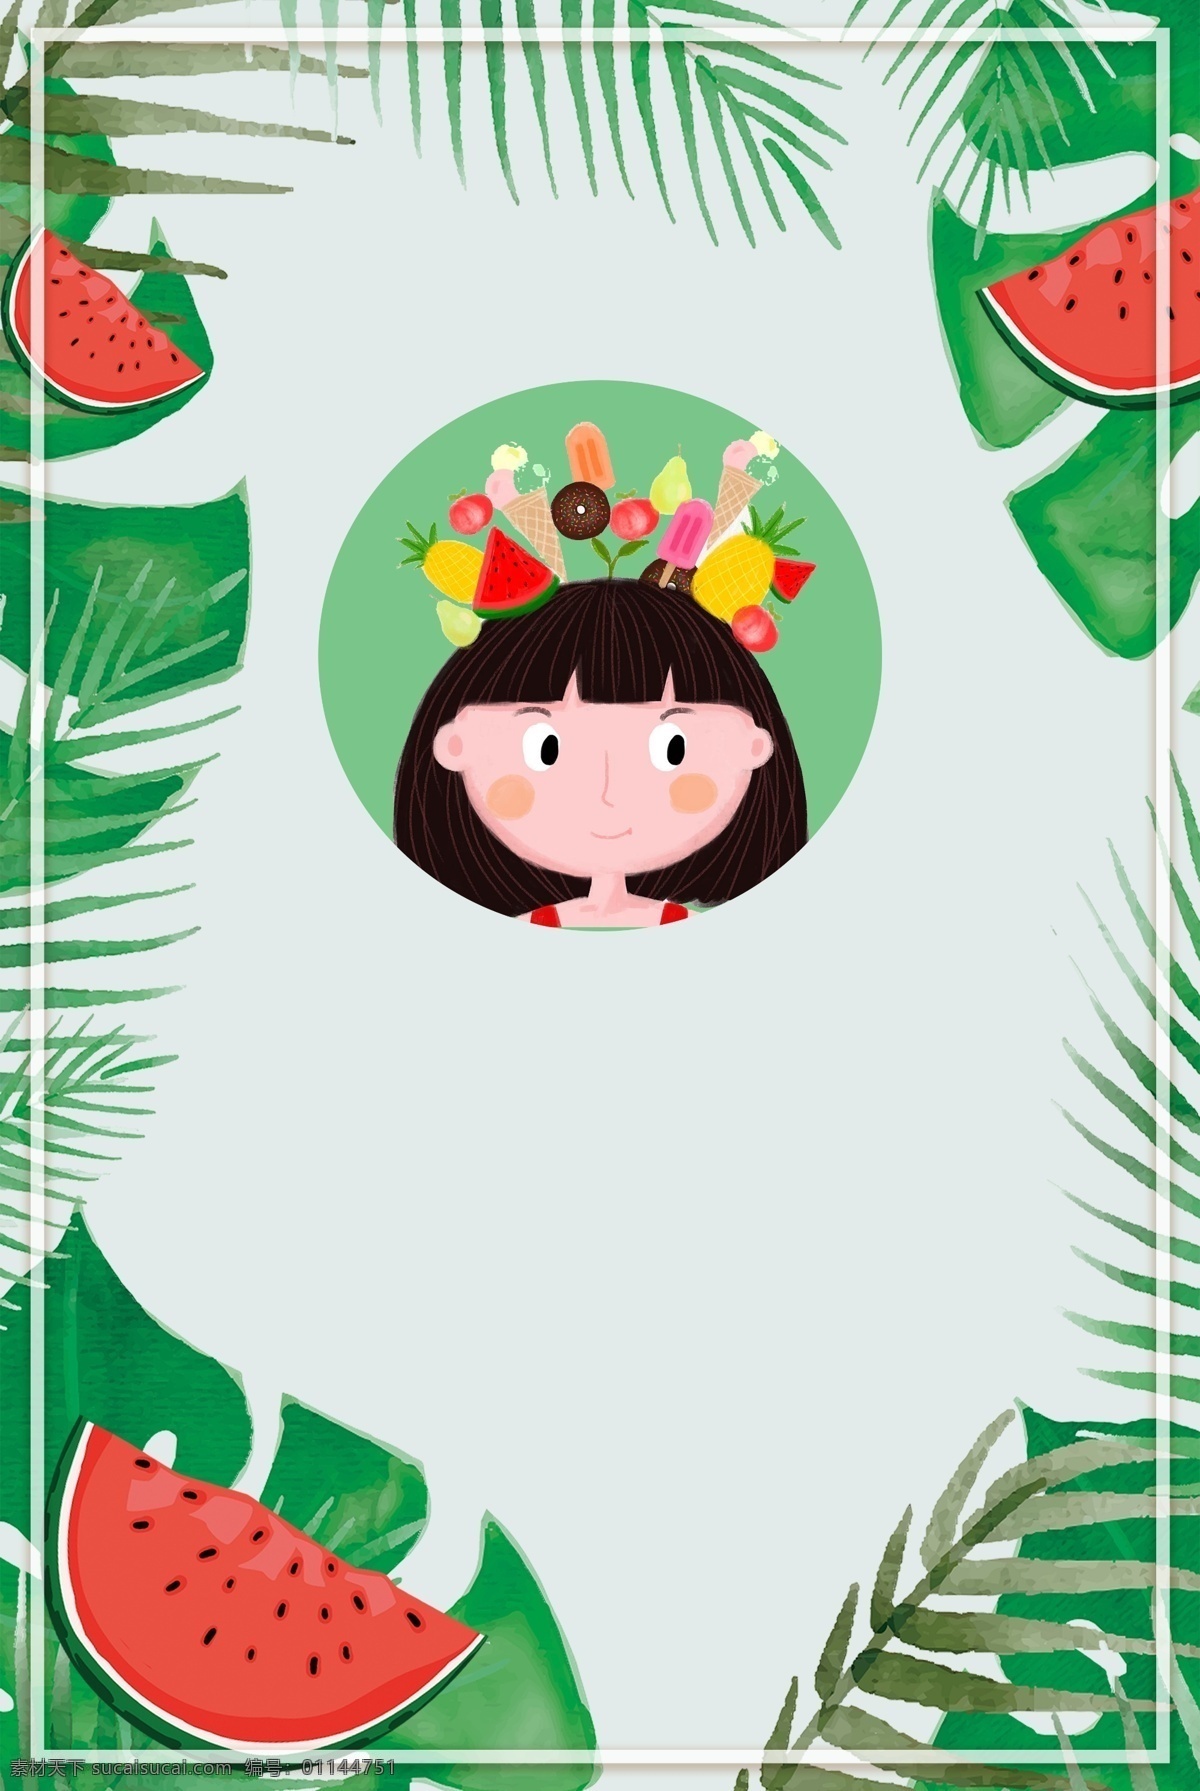 绿色 夏日 小 清新 西瓜 边框 简约 背景 卡通 手绘 简洁 清爽 女孩 促销海报 旅行海报 植物